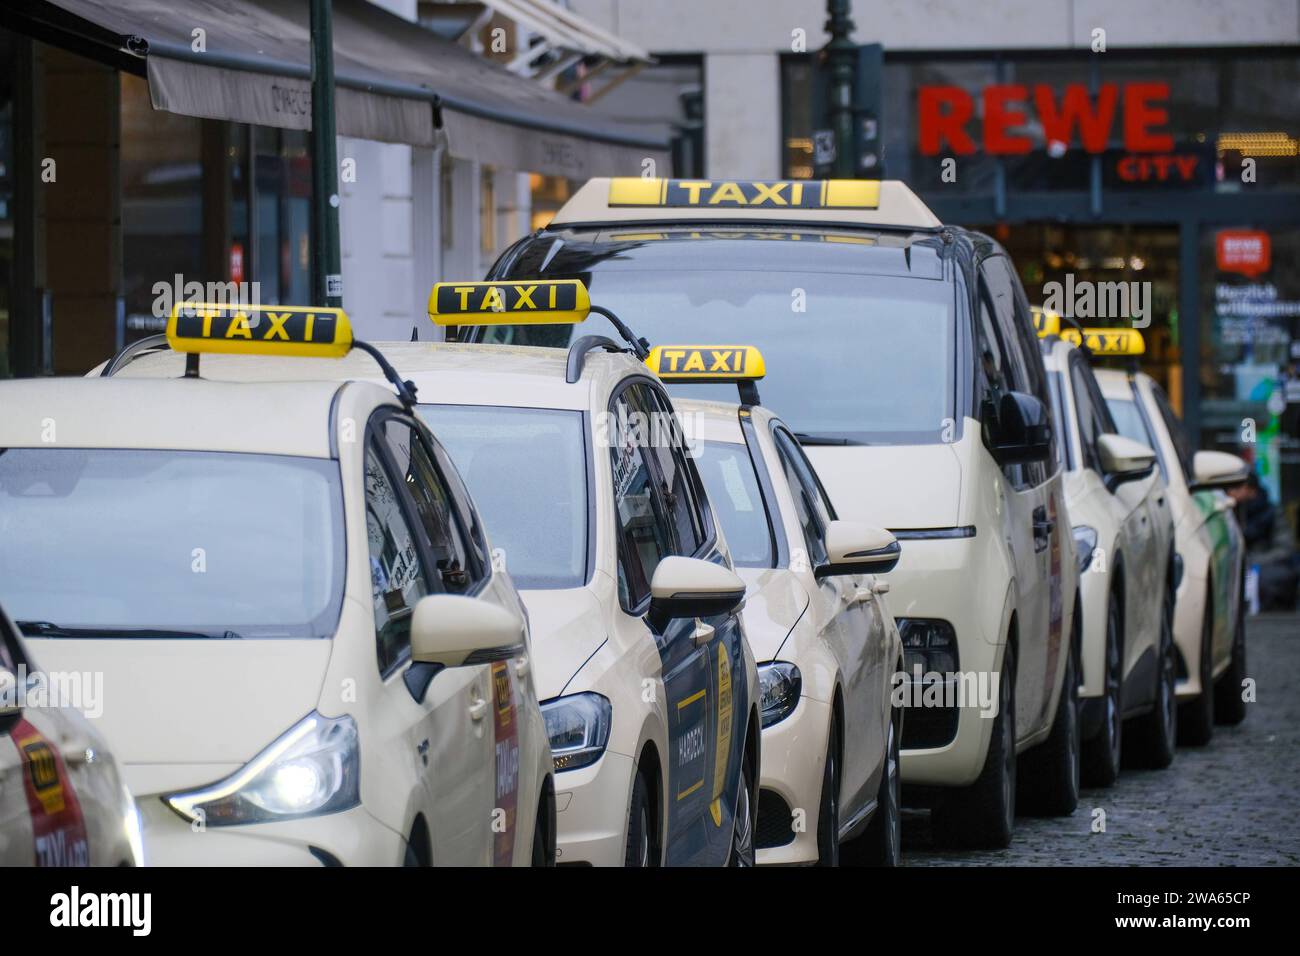 54.100+ Fotos, Bilder und lizenzfreie Bilder zu Taxi Schild